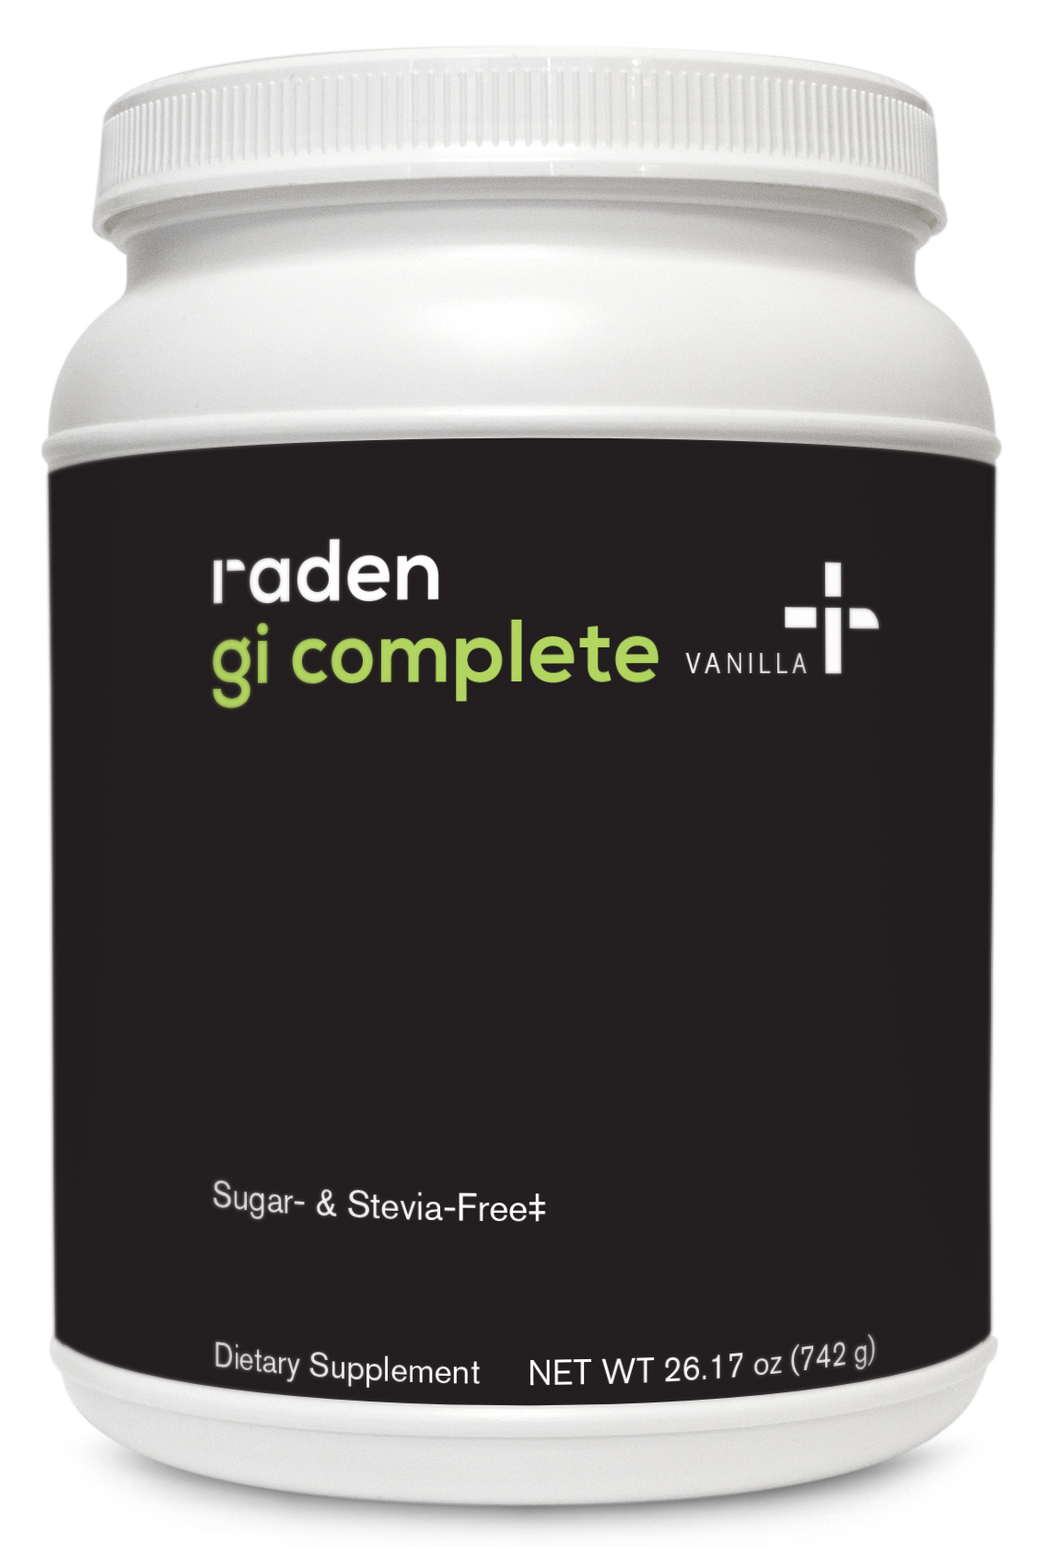 Raden, GI Complete Vanilla